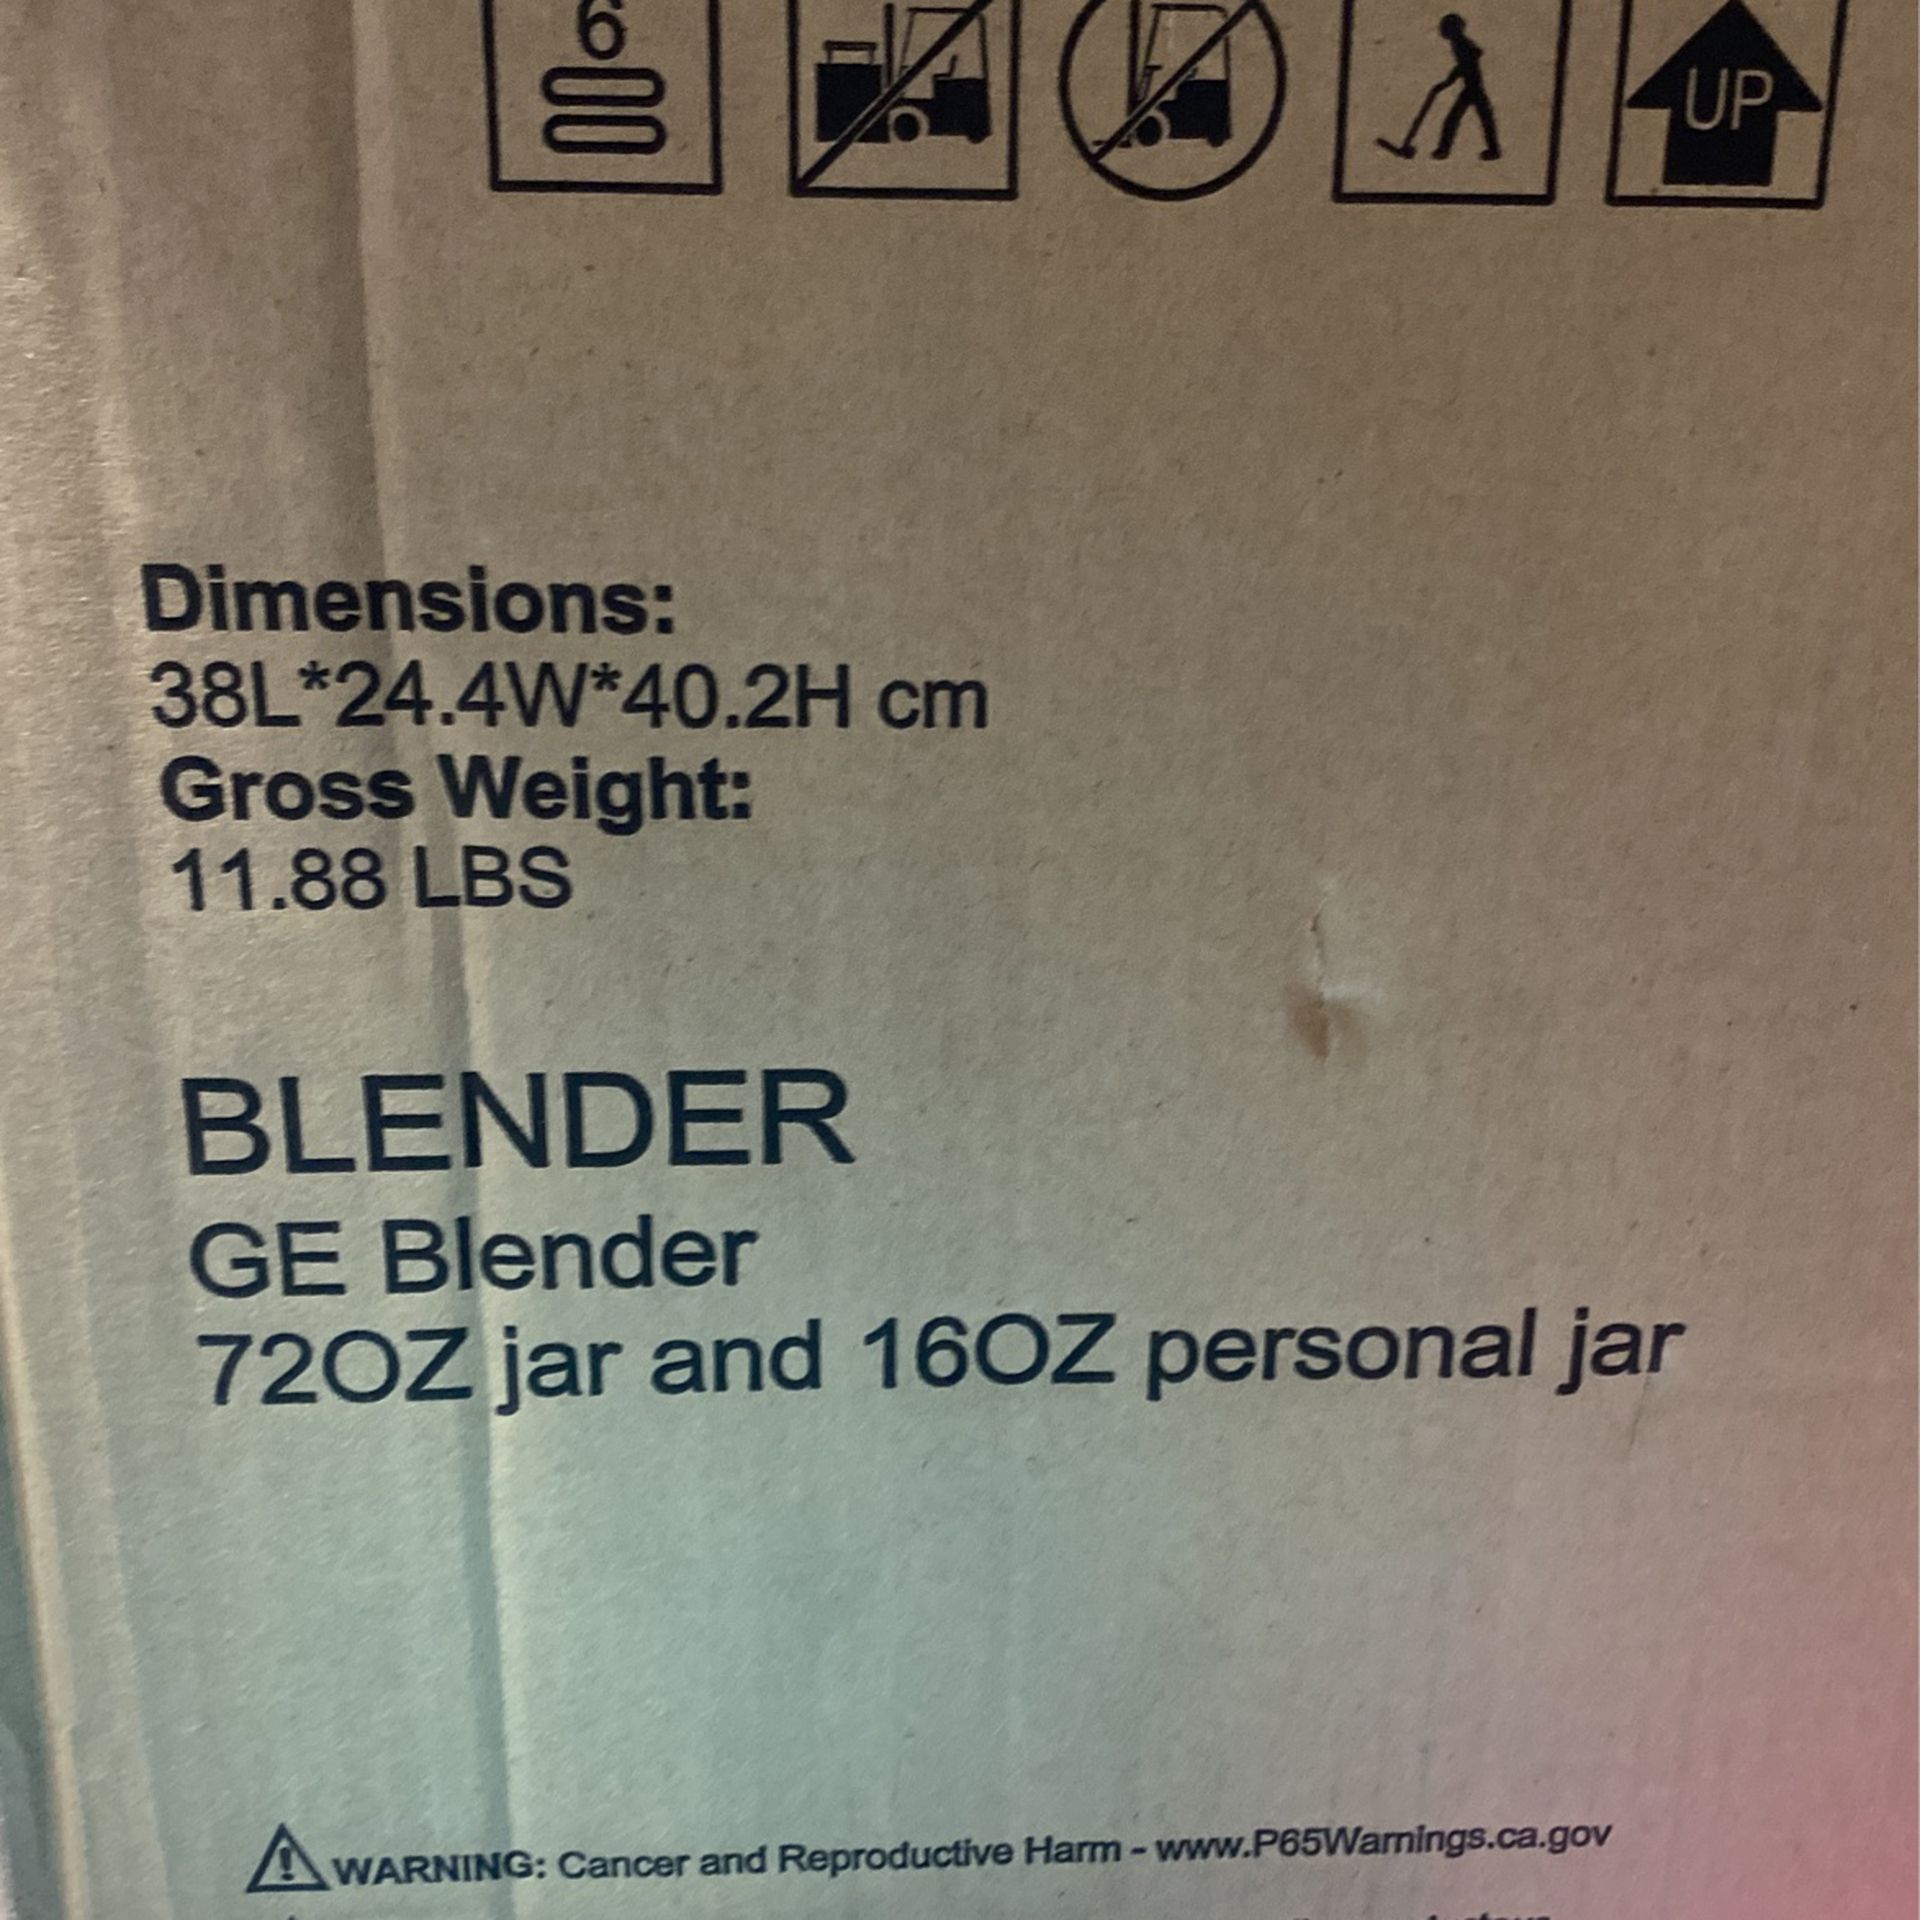 GE Blender for Sale in Teaneck, NJ - OfferUp